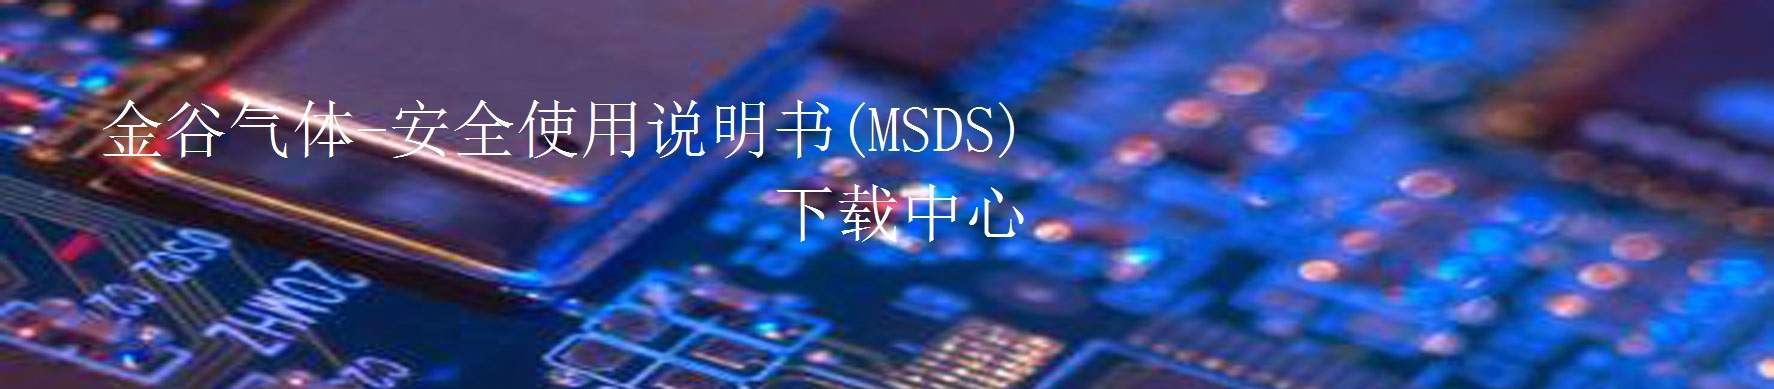 MSDS